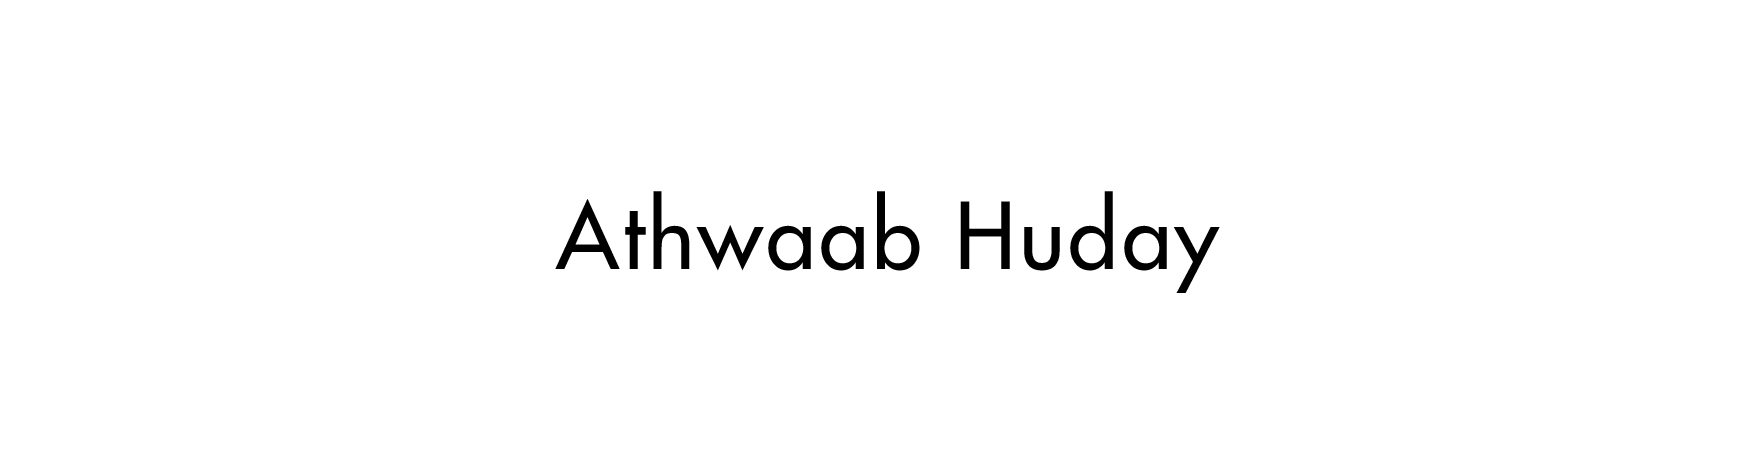 Athwaab Huday